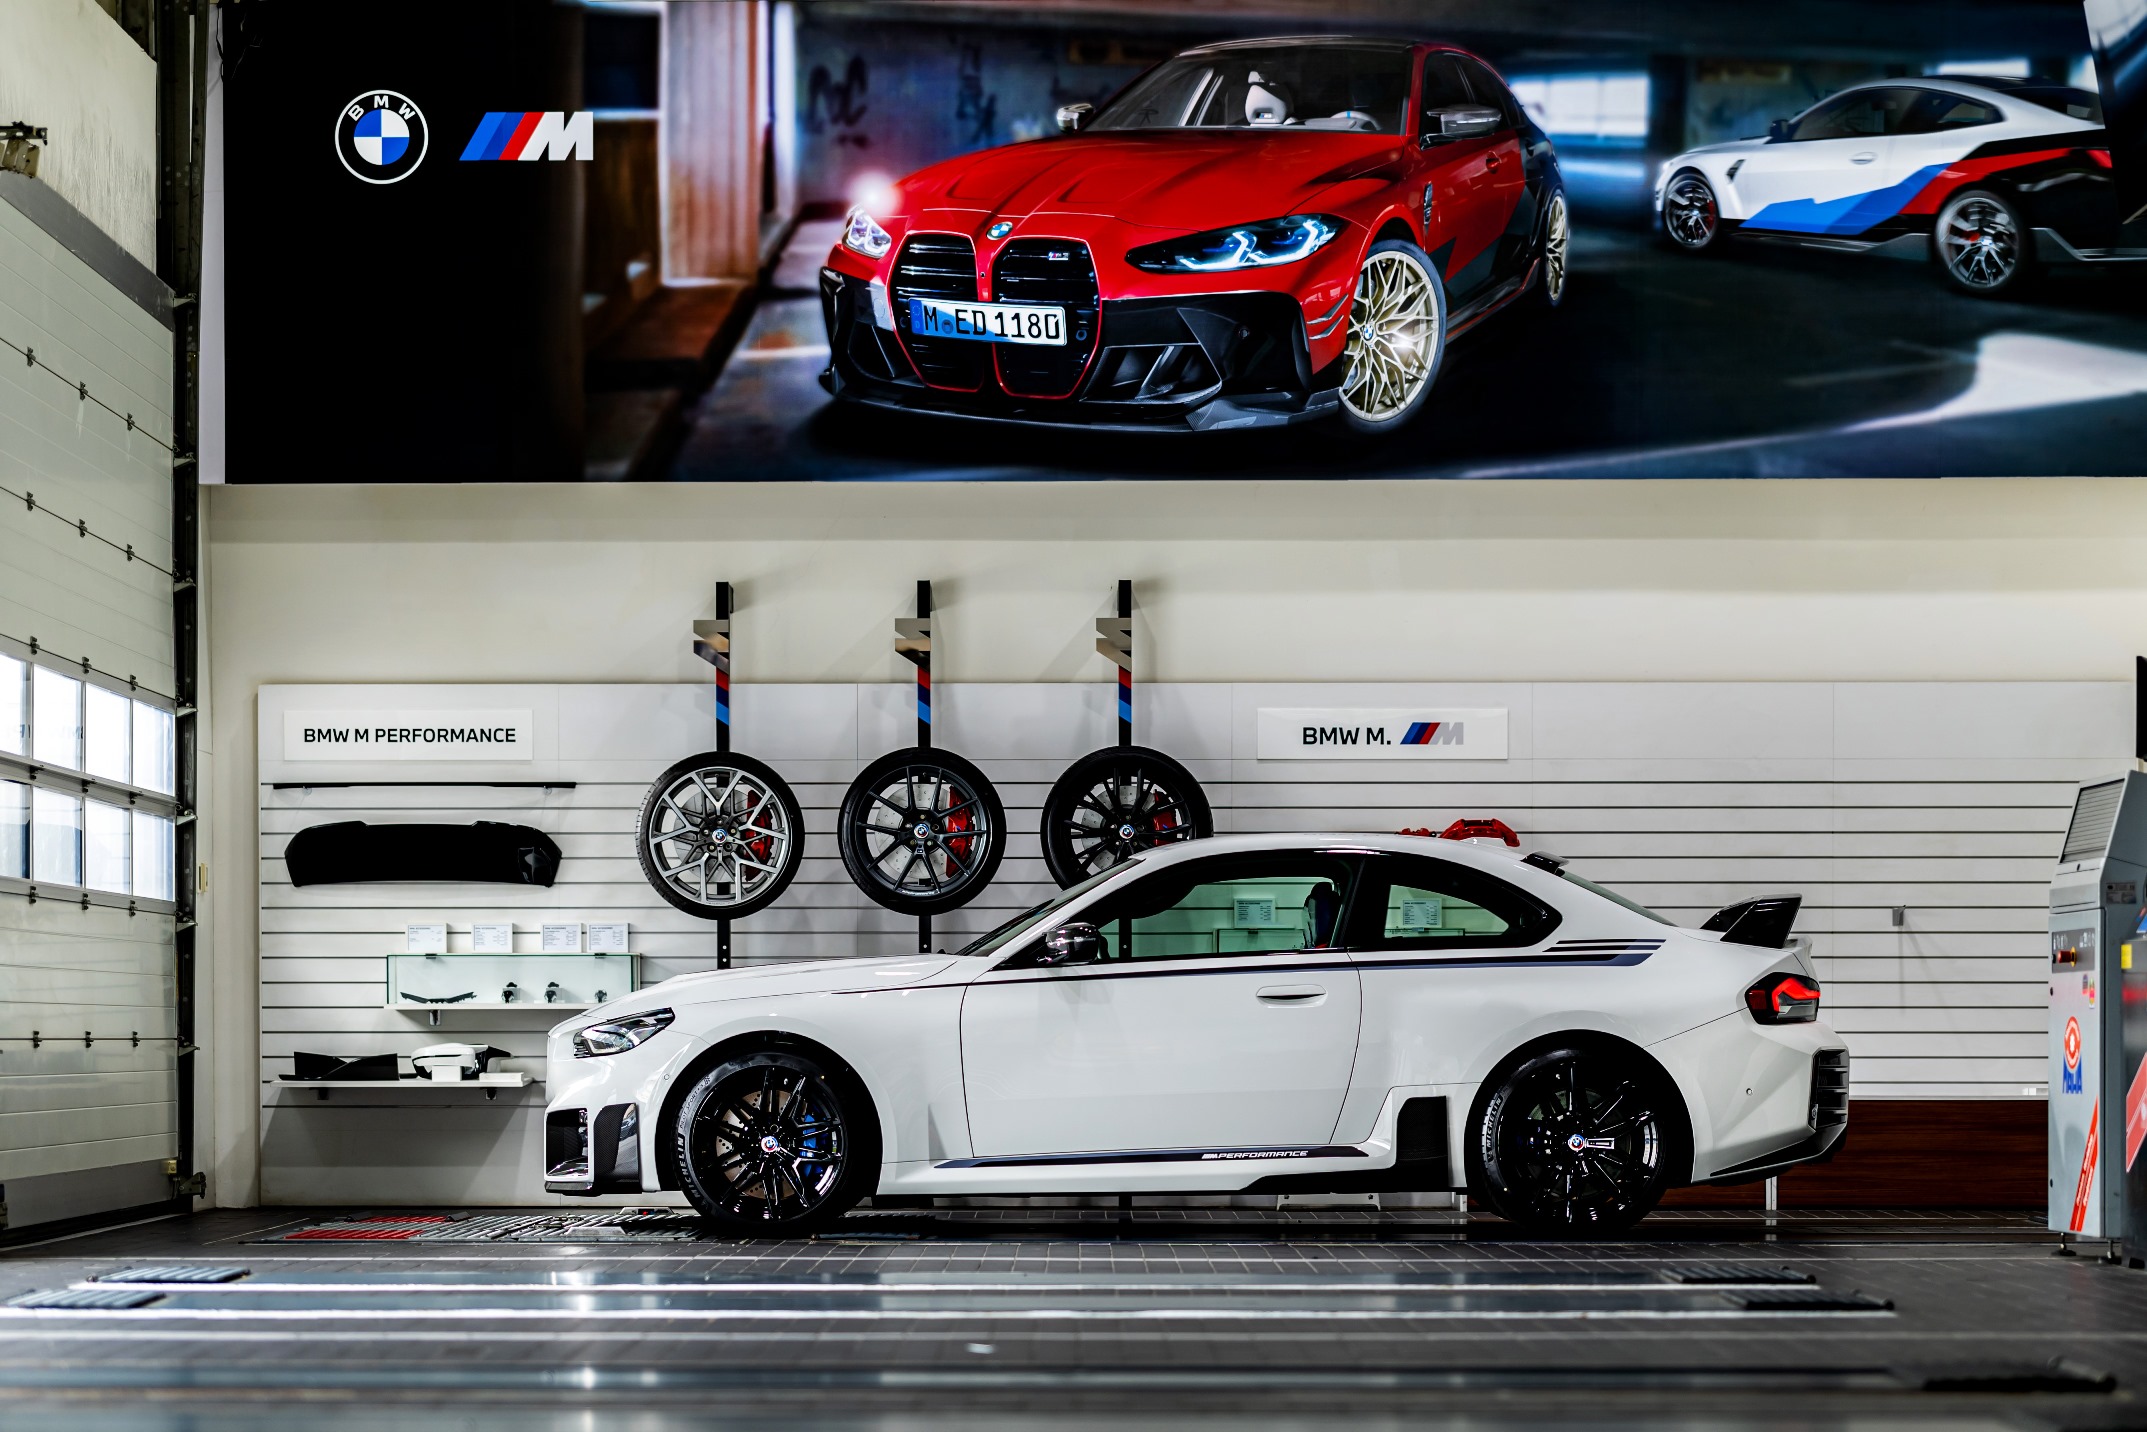 抓緊眾人的欣羨目光全新世代BMW M2 Coupé專屬BMW M PERFORMANCE套件  硬派跑格強悍升級